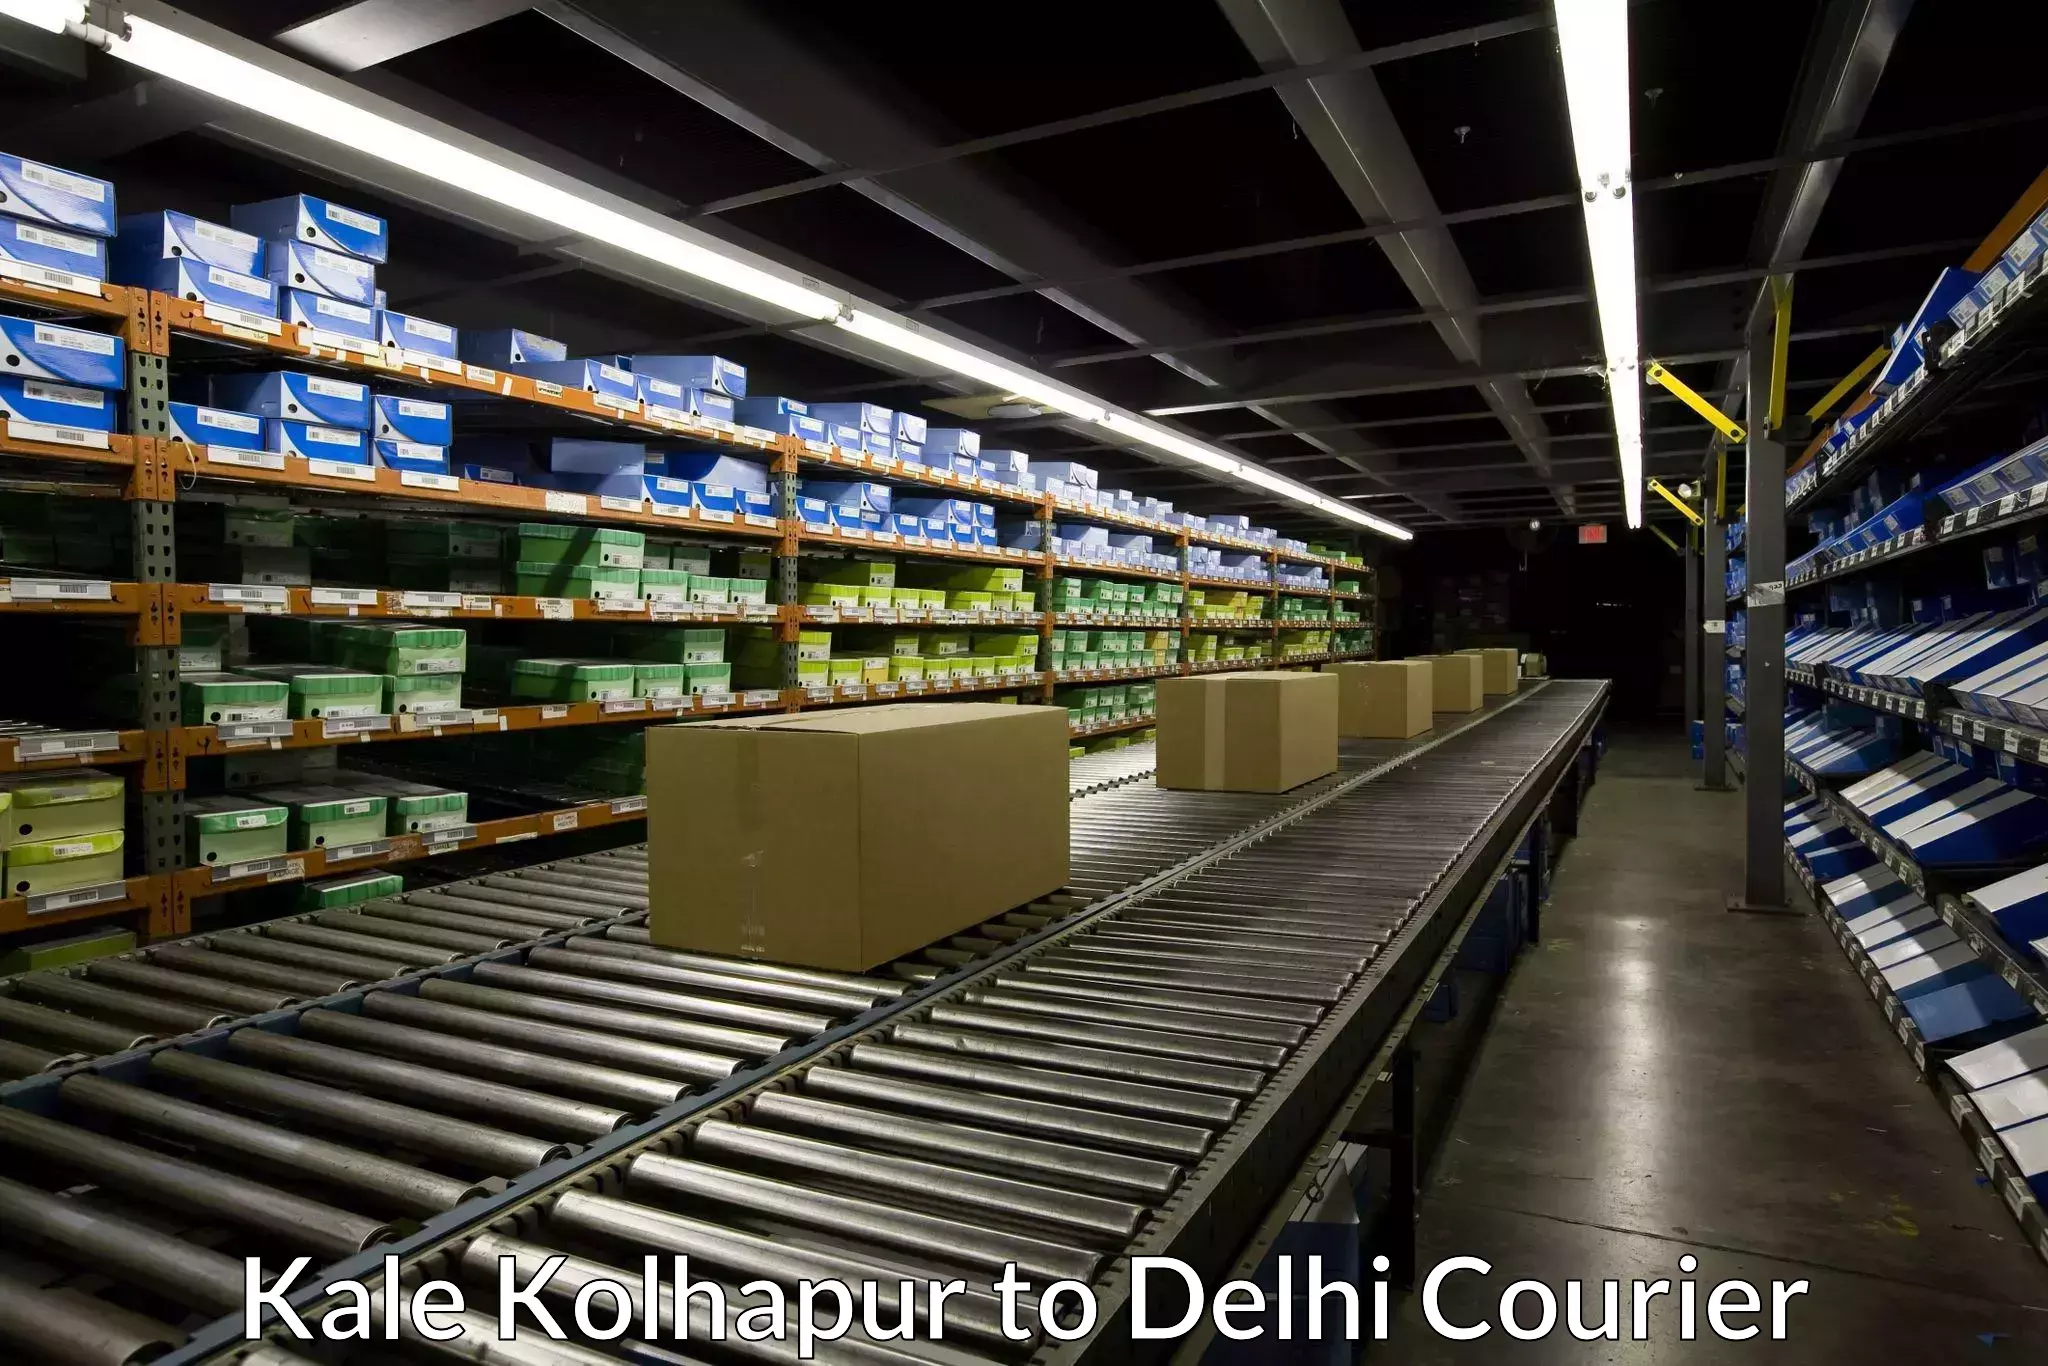 Smart courier technologies Kale Kolhapur to Delhi